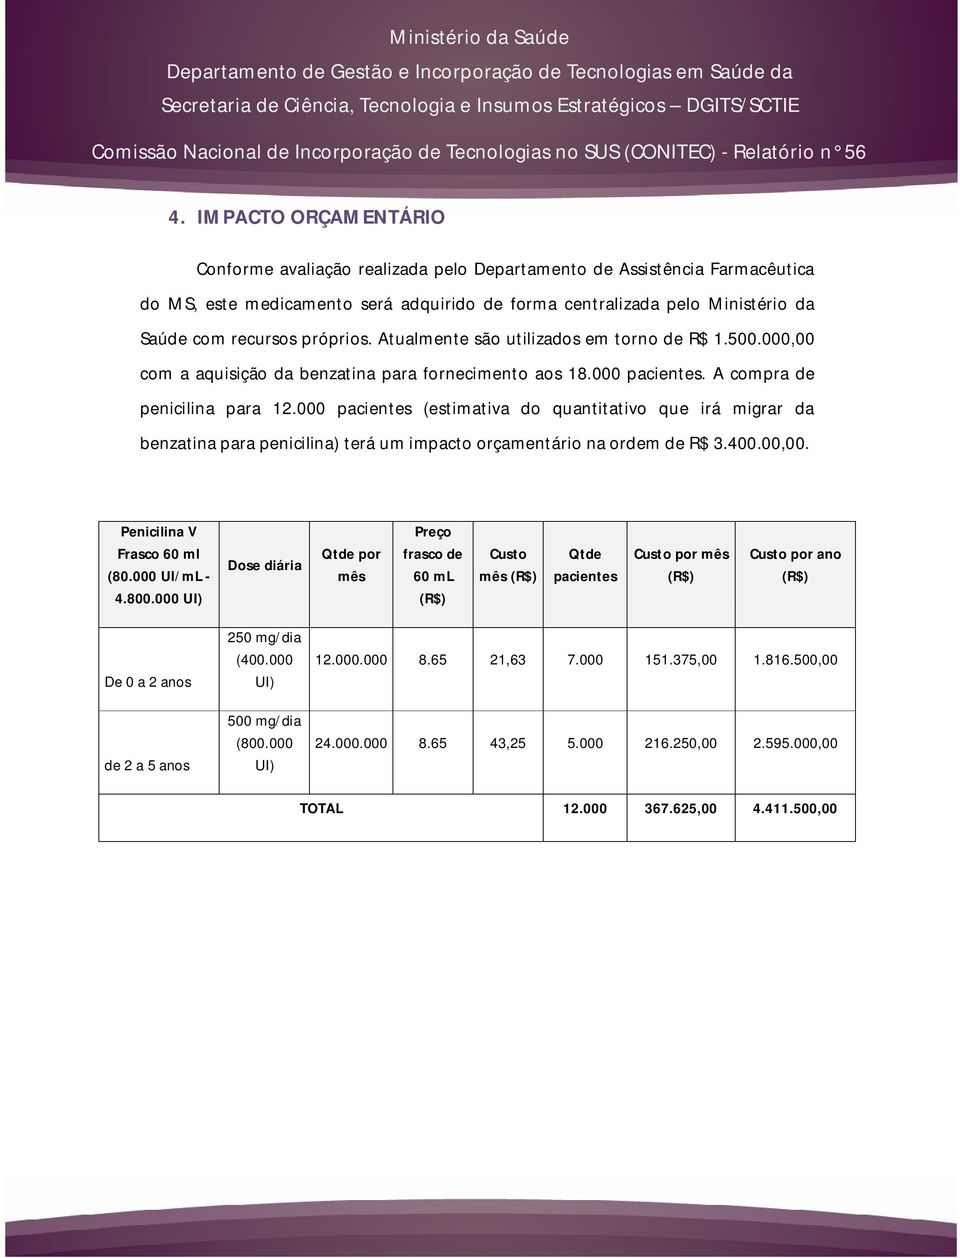 000 pacientes (estimativa do quantitativo que irá migrar da benzatina para penicilina) terá um impacto orçamentário na ordem de R$ 3.400.00,00. Penicilina V Frasco 60 ml (80.000 UI/mL - 4.800.